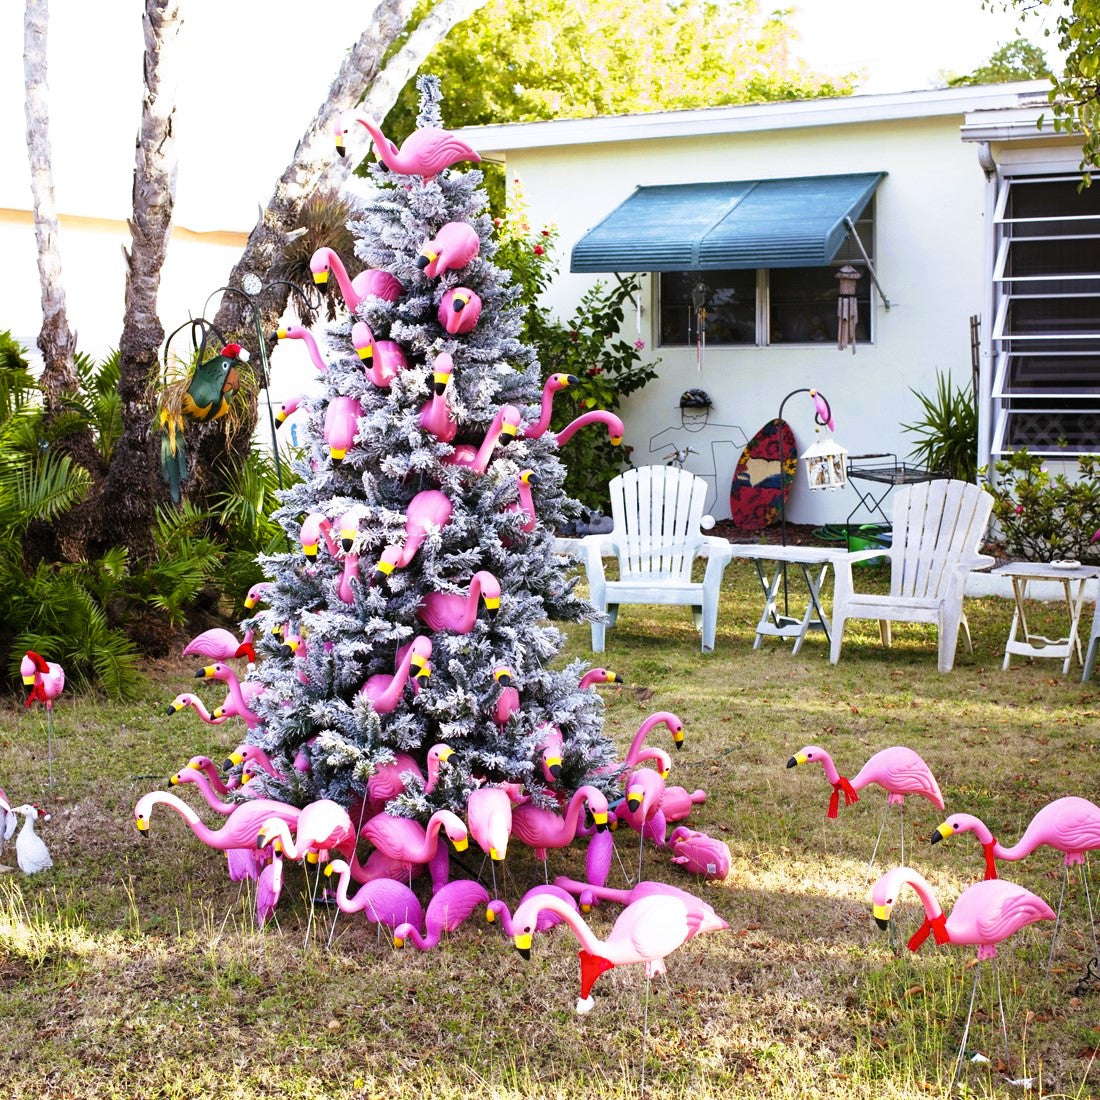 Mele Kalikimaka - The Pink Flamingo Christmas Fragrance! *Holiday*